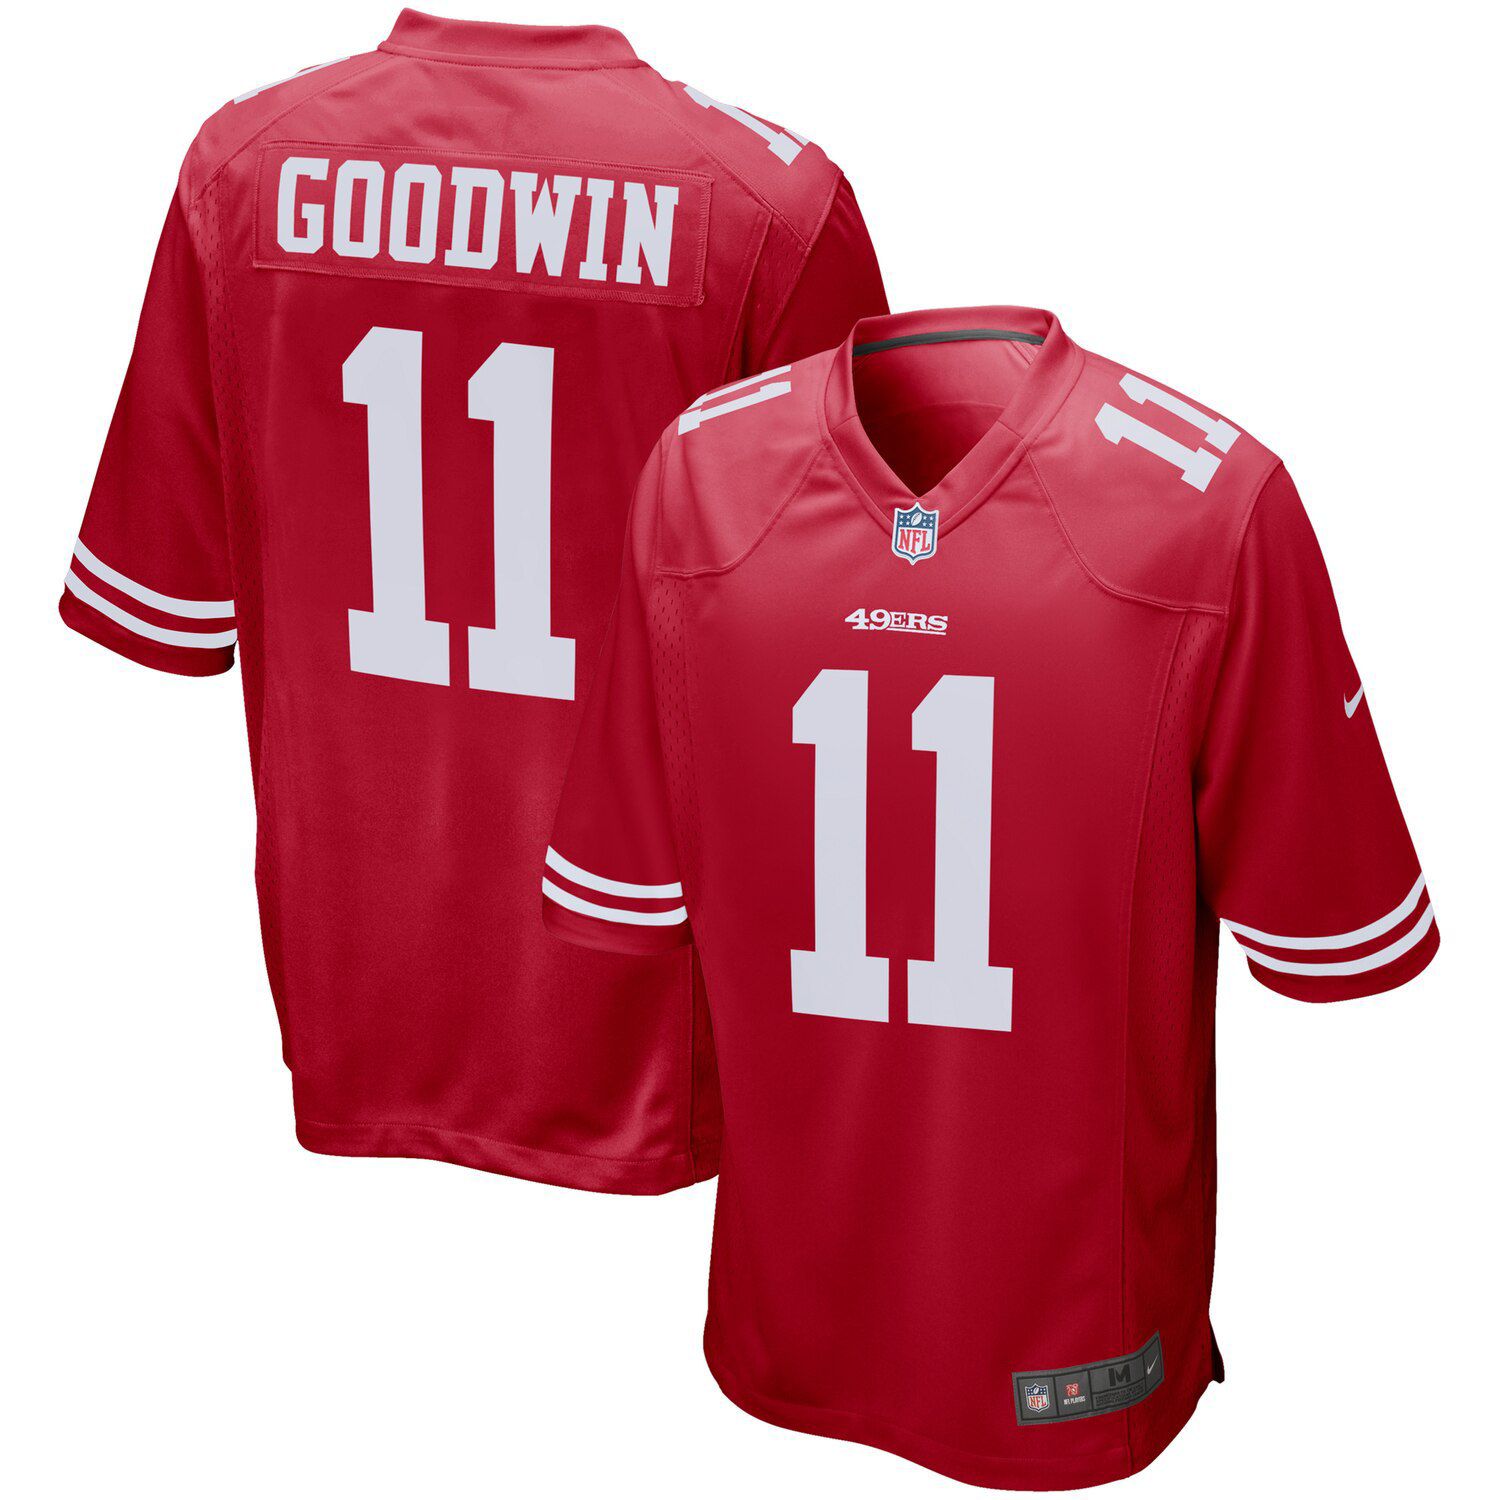 49ers goodwin jersey